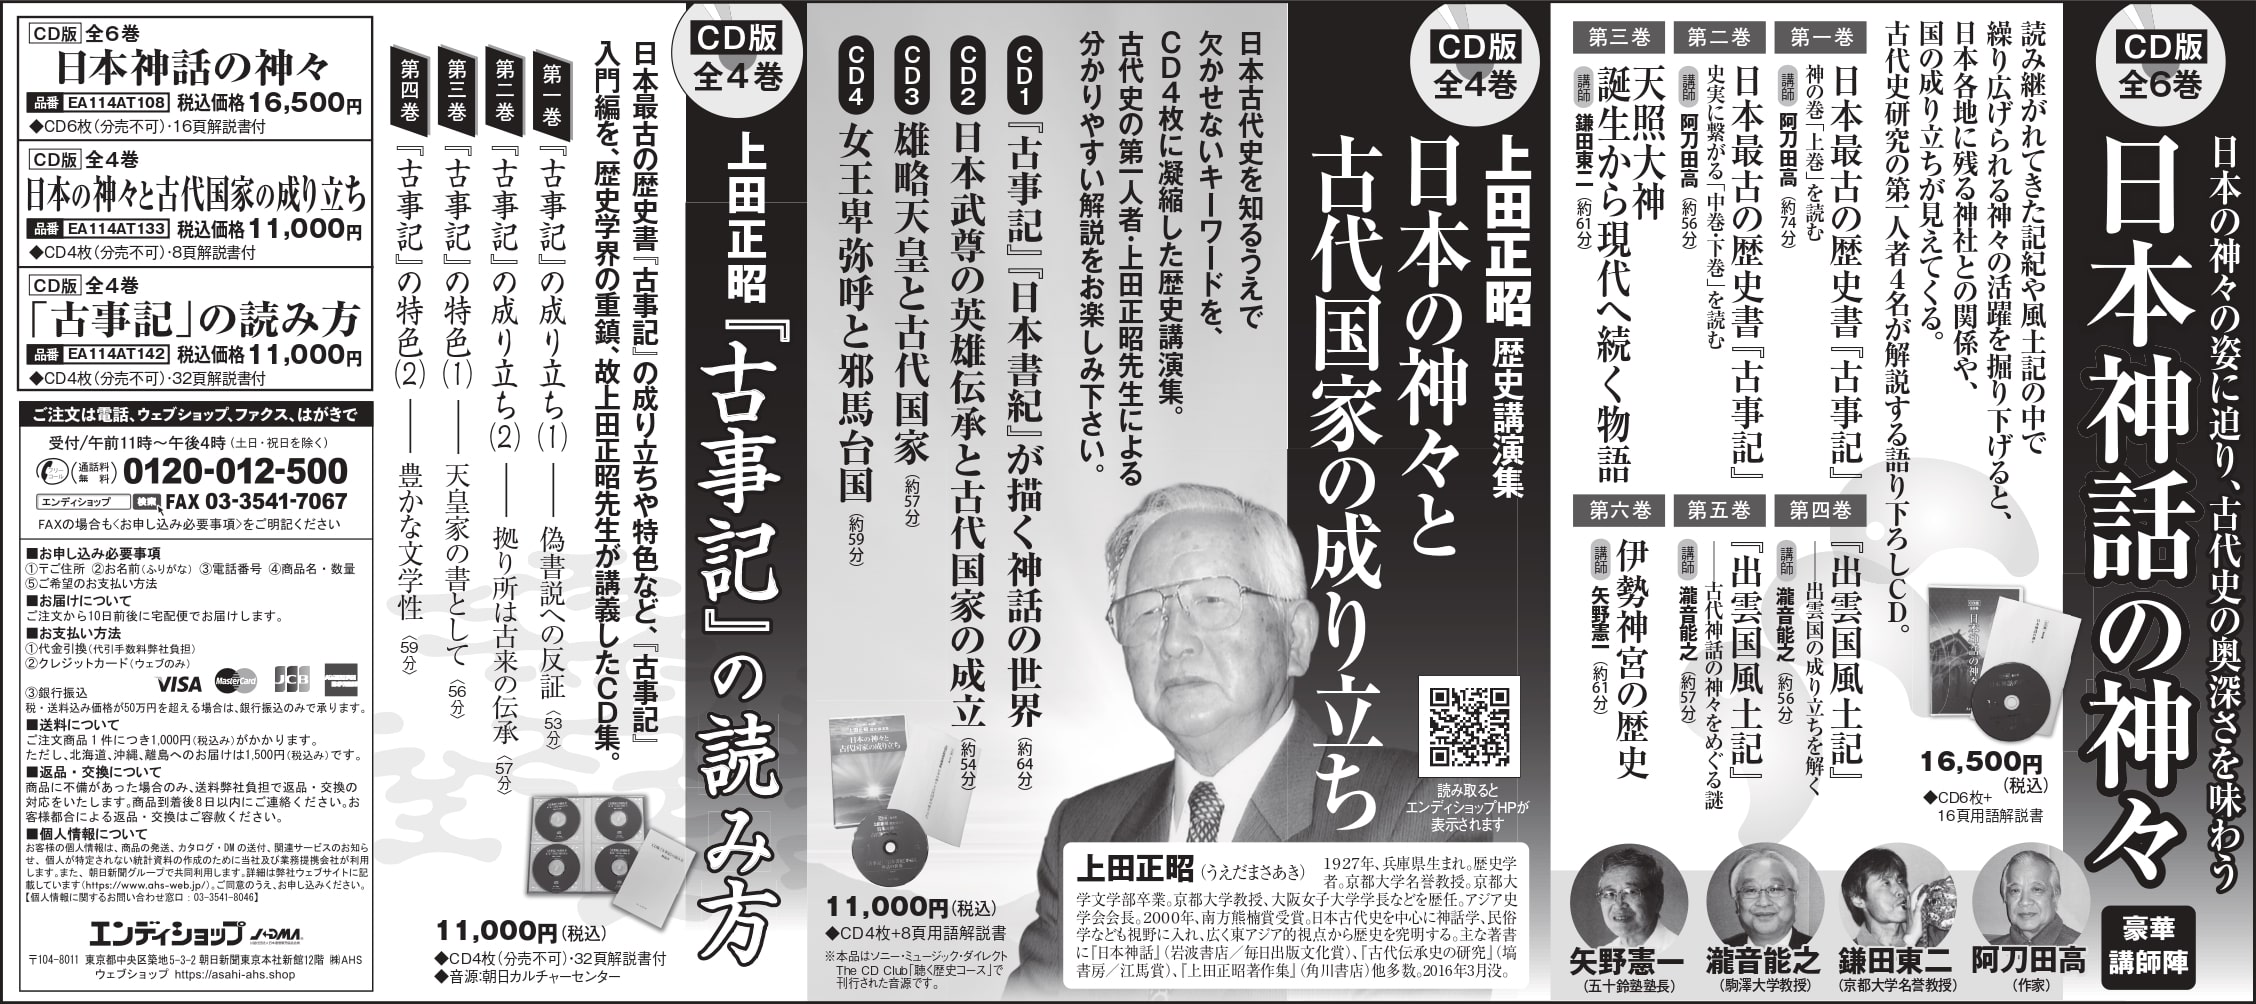 8月23日朝日新聞に上田正昭先生の日本神話関連CD集などの広告を掲載しました。（23日東京夕刊、24日統合版）